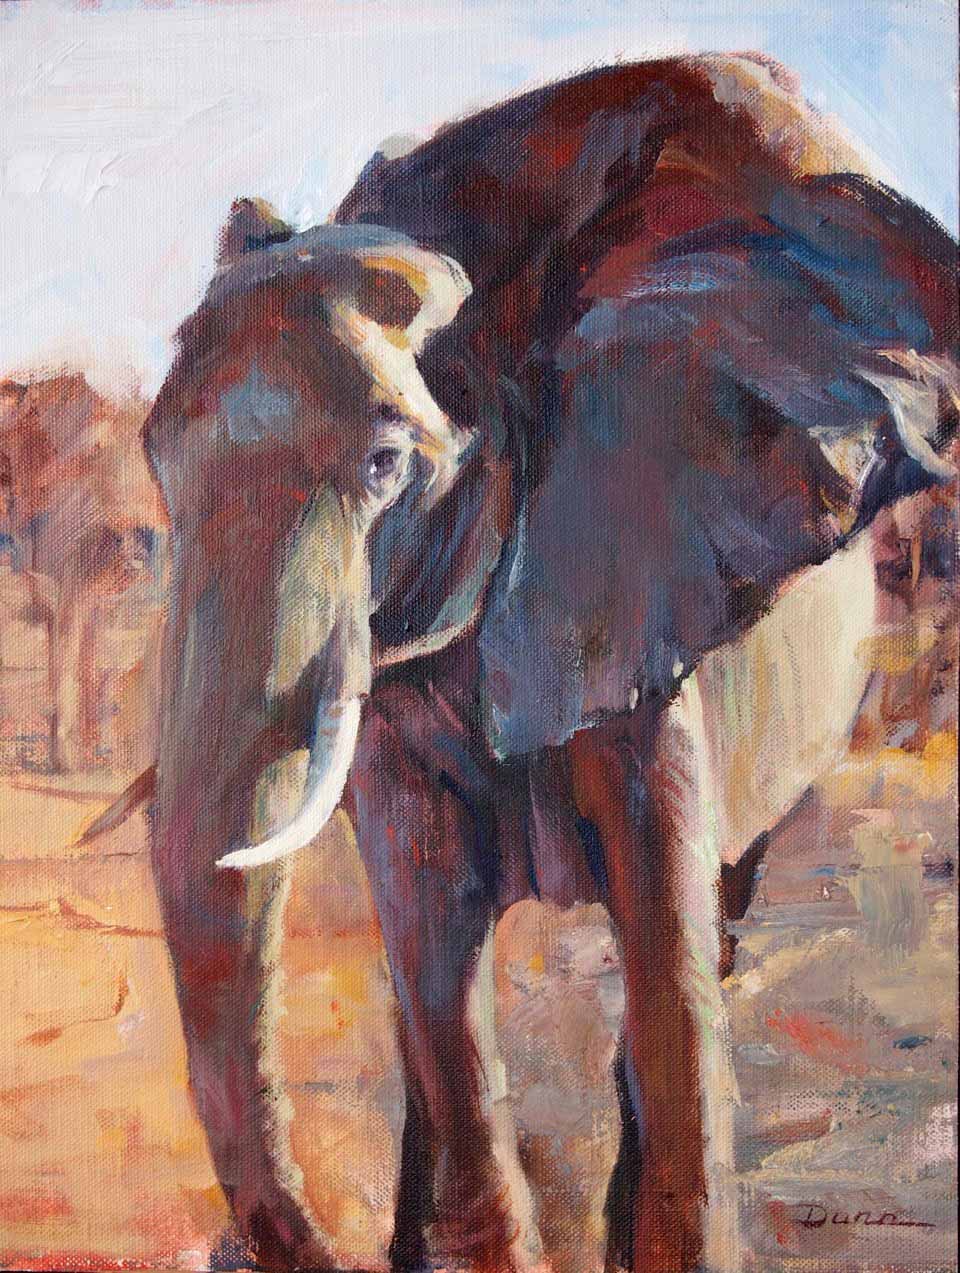  - Mary_Dunn_Elephant-painting_L